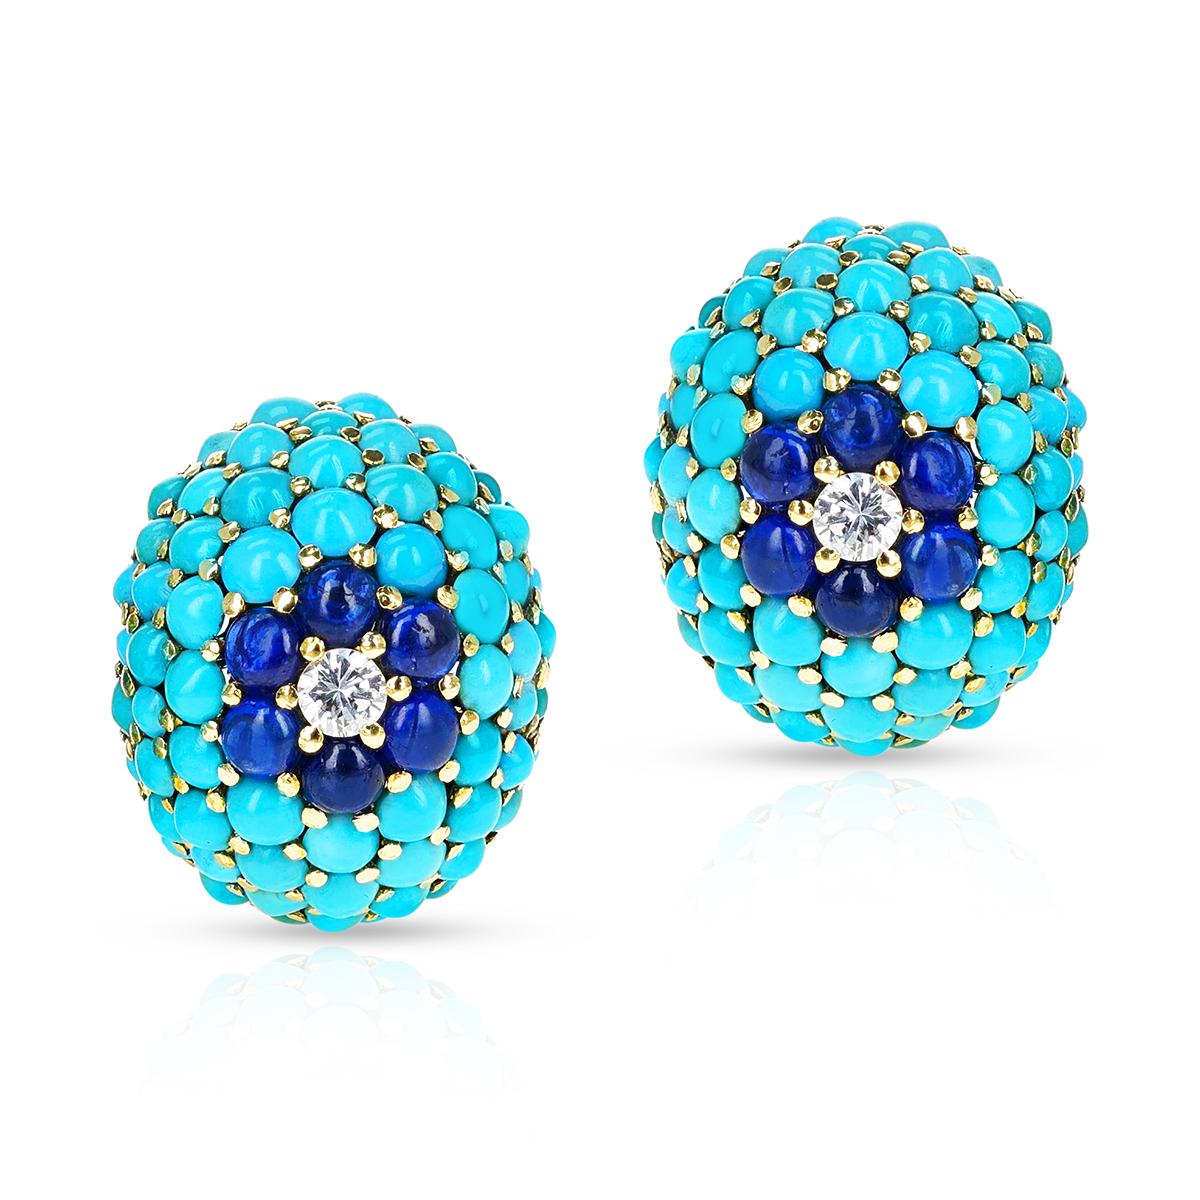 Ein Retro-Stil Türkis und Saphir Cabochon Paar Ohrringe mit Diamanten. Die Saphire wiegen ca. 3,60 ct. und die Diamanten wiegen 0,40 ct. Der Ring ist aus 18k Gelbgold gefertigt. Passender Ring erhältlich.


